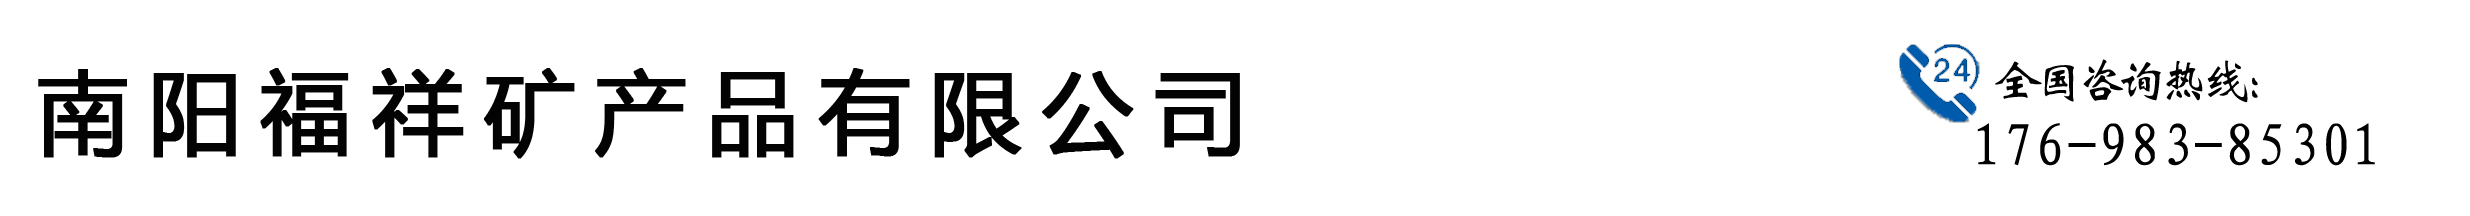 南召积金矿产_Logo